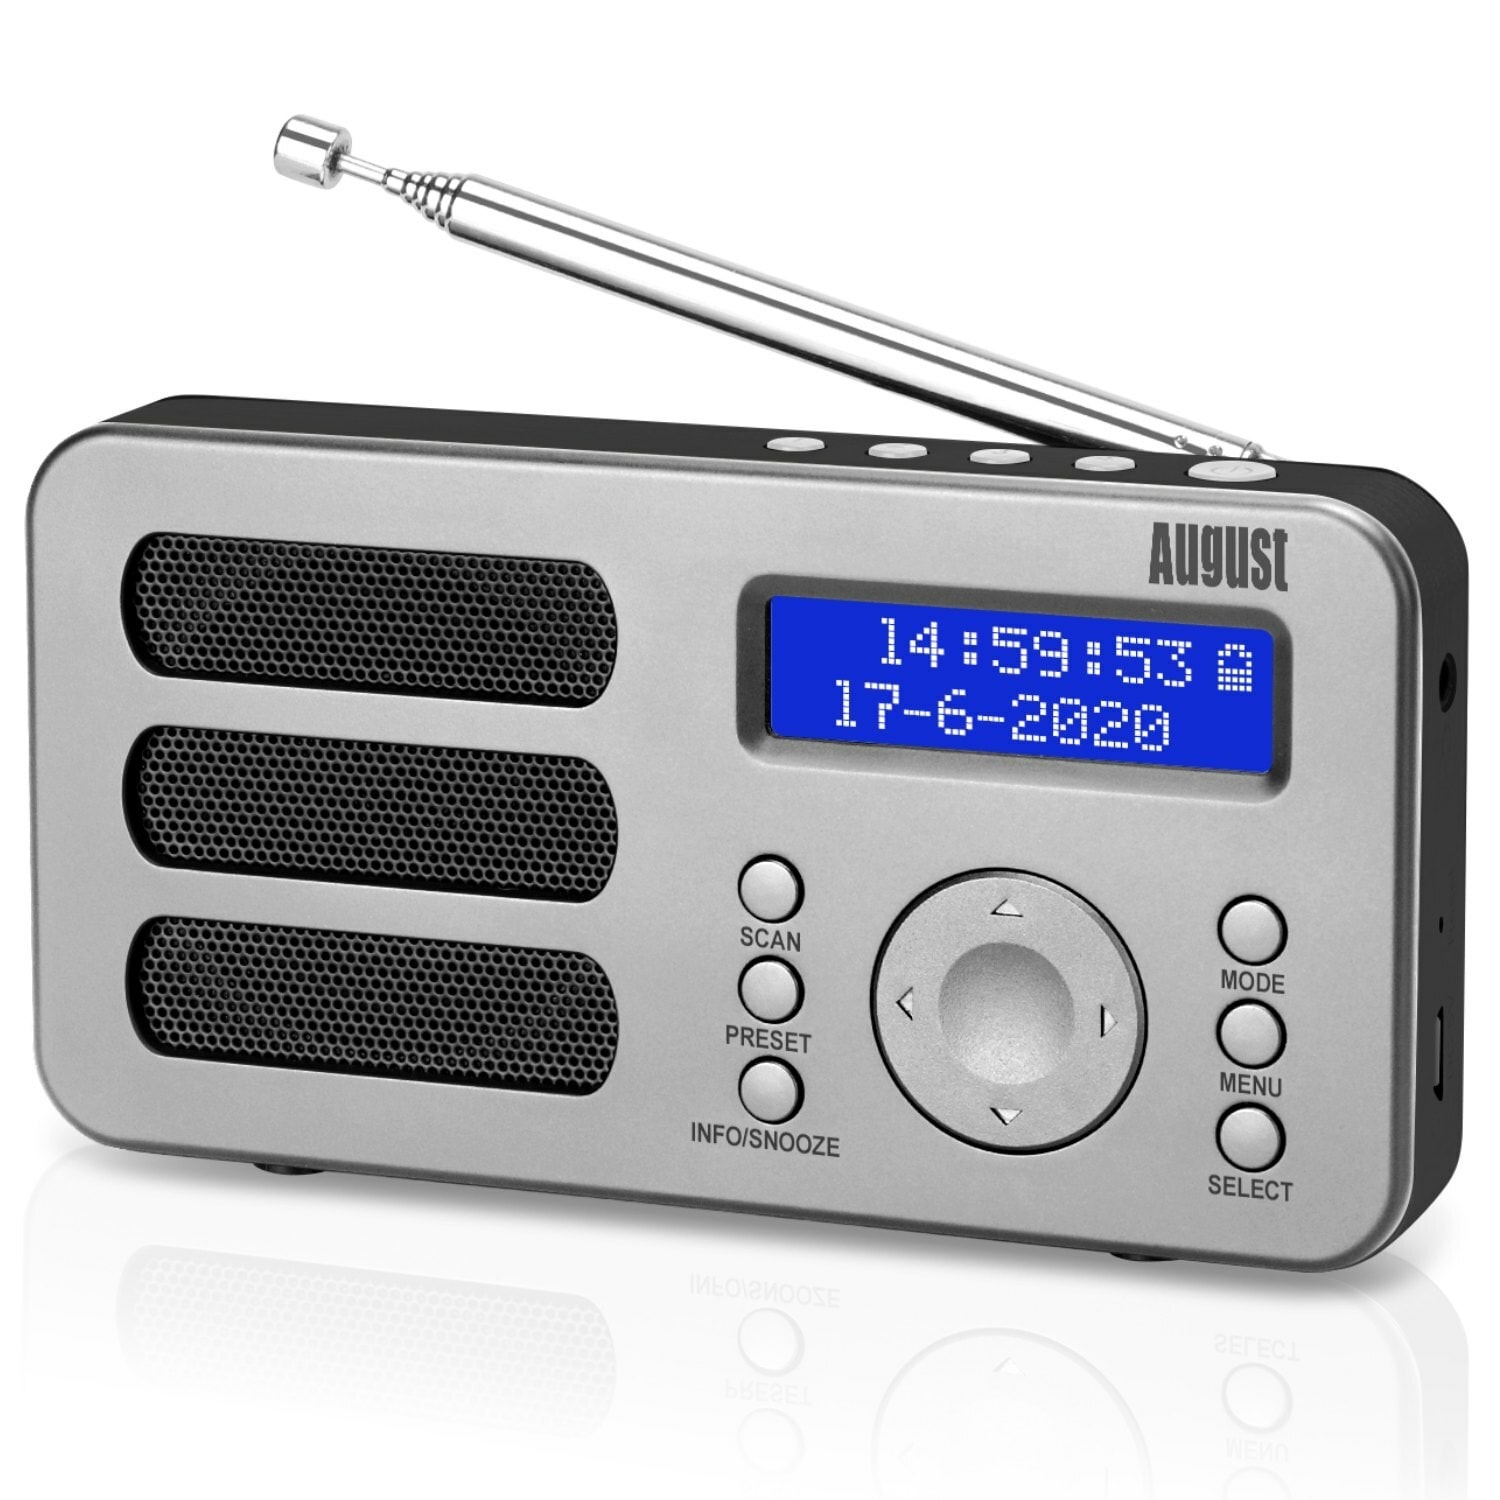 Radio portable rechargeable fm dab dab+ rnt – august mb225 – petit poste  radio numérique gris AUGUST